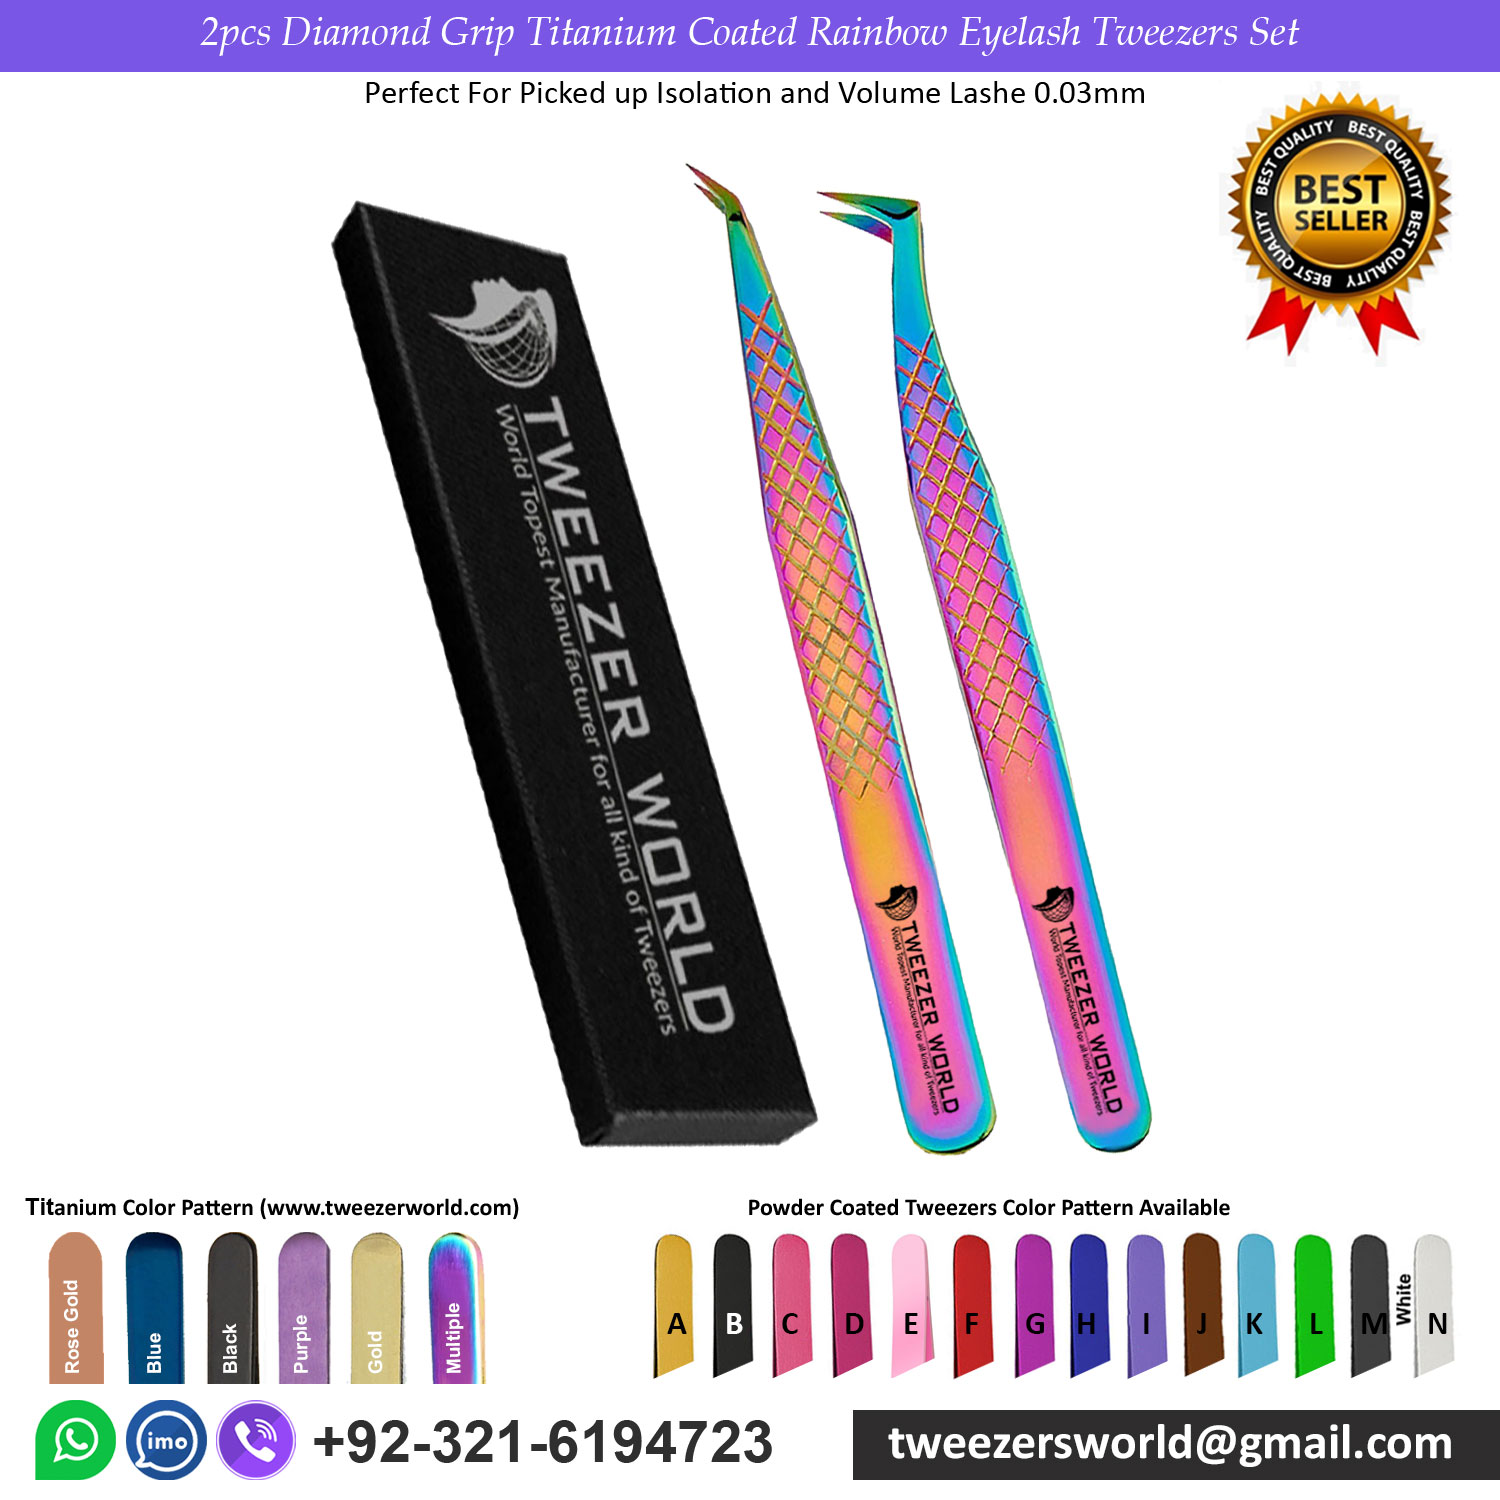 2pcs Diamond Grip Titanium Coated Rainbow Eyelash Tweezers Set with Box